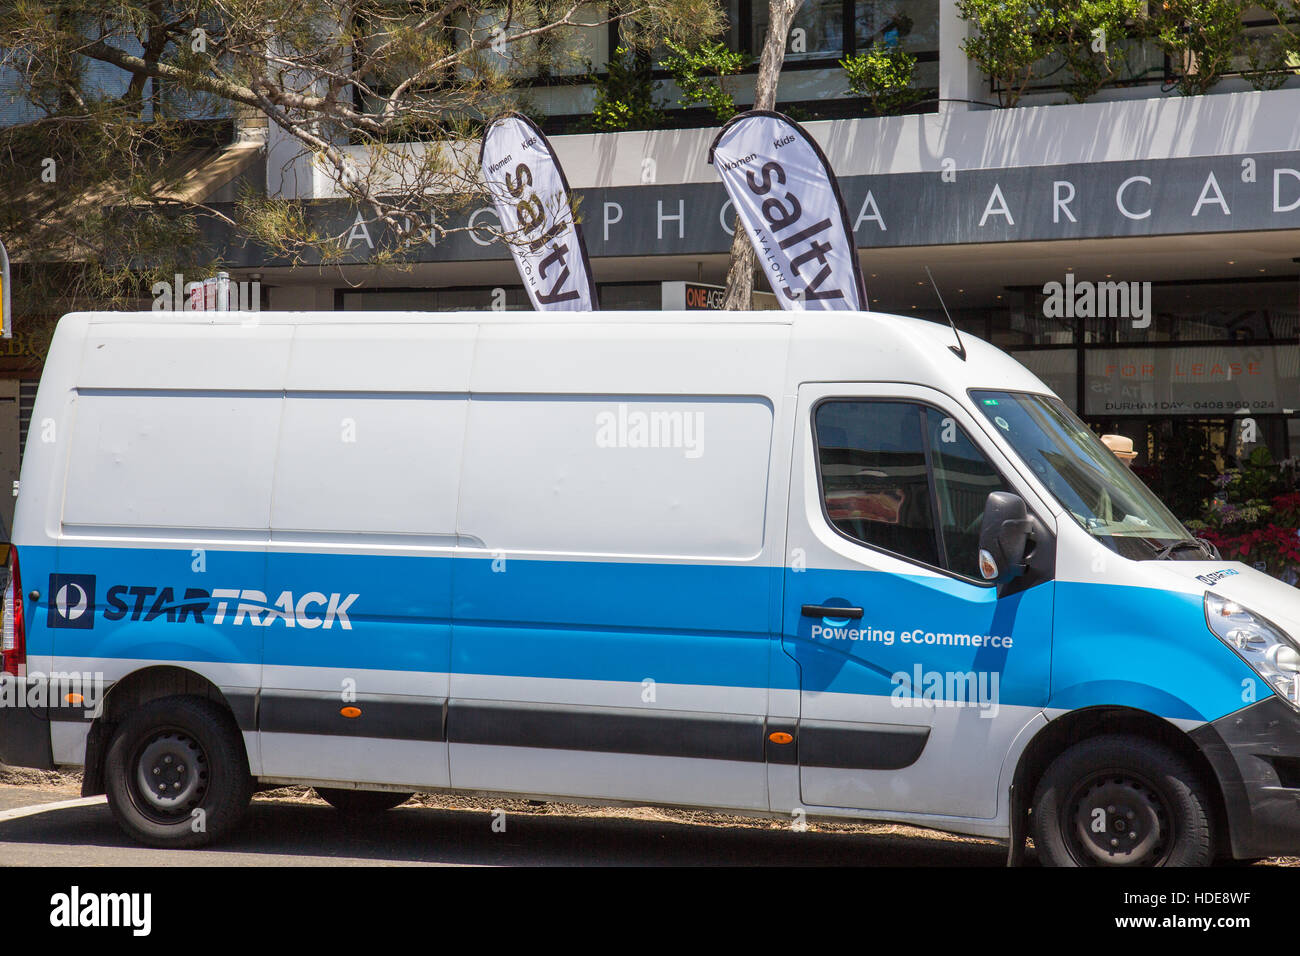 StarTrack est un national Australian transport logistique et la livraison de colis société détenue par Australia Post. Banque D'Images